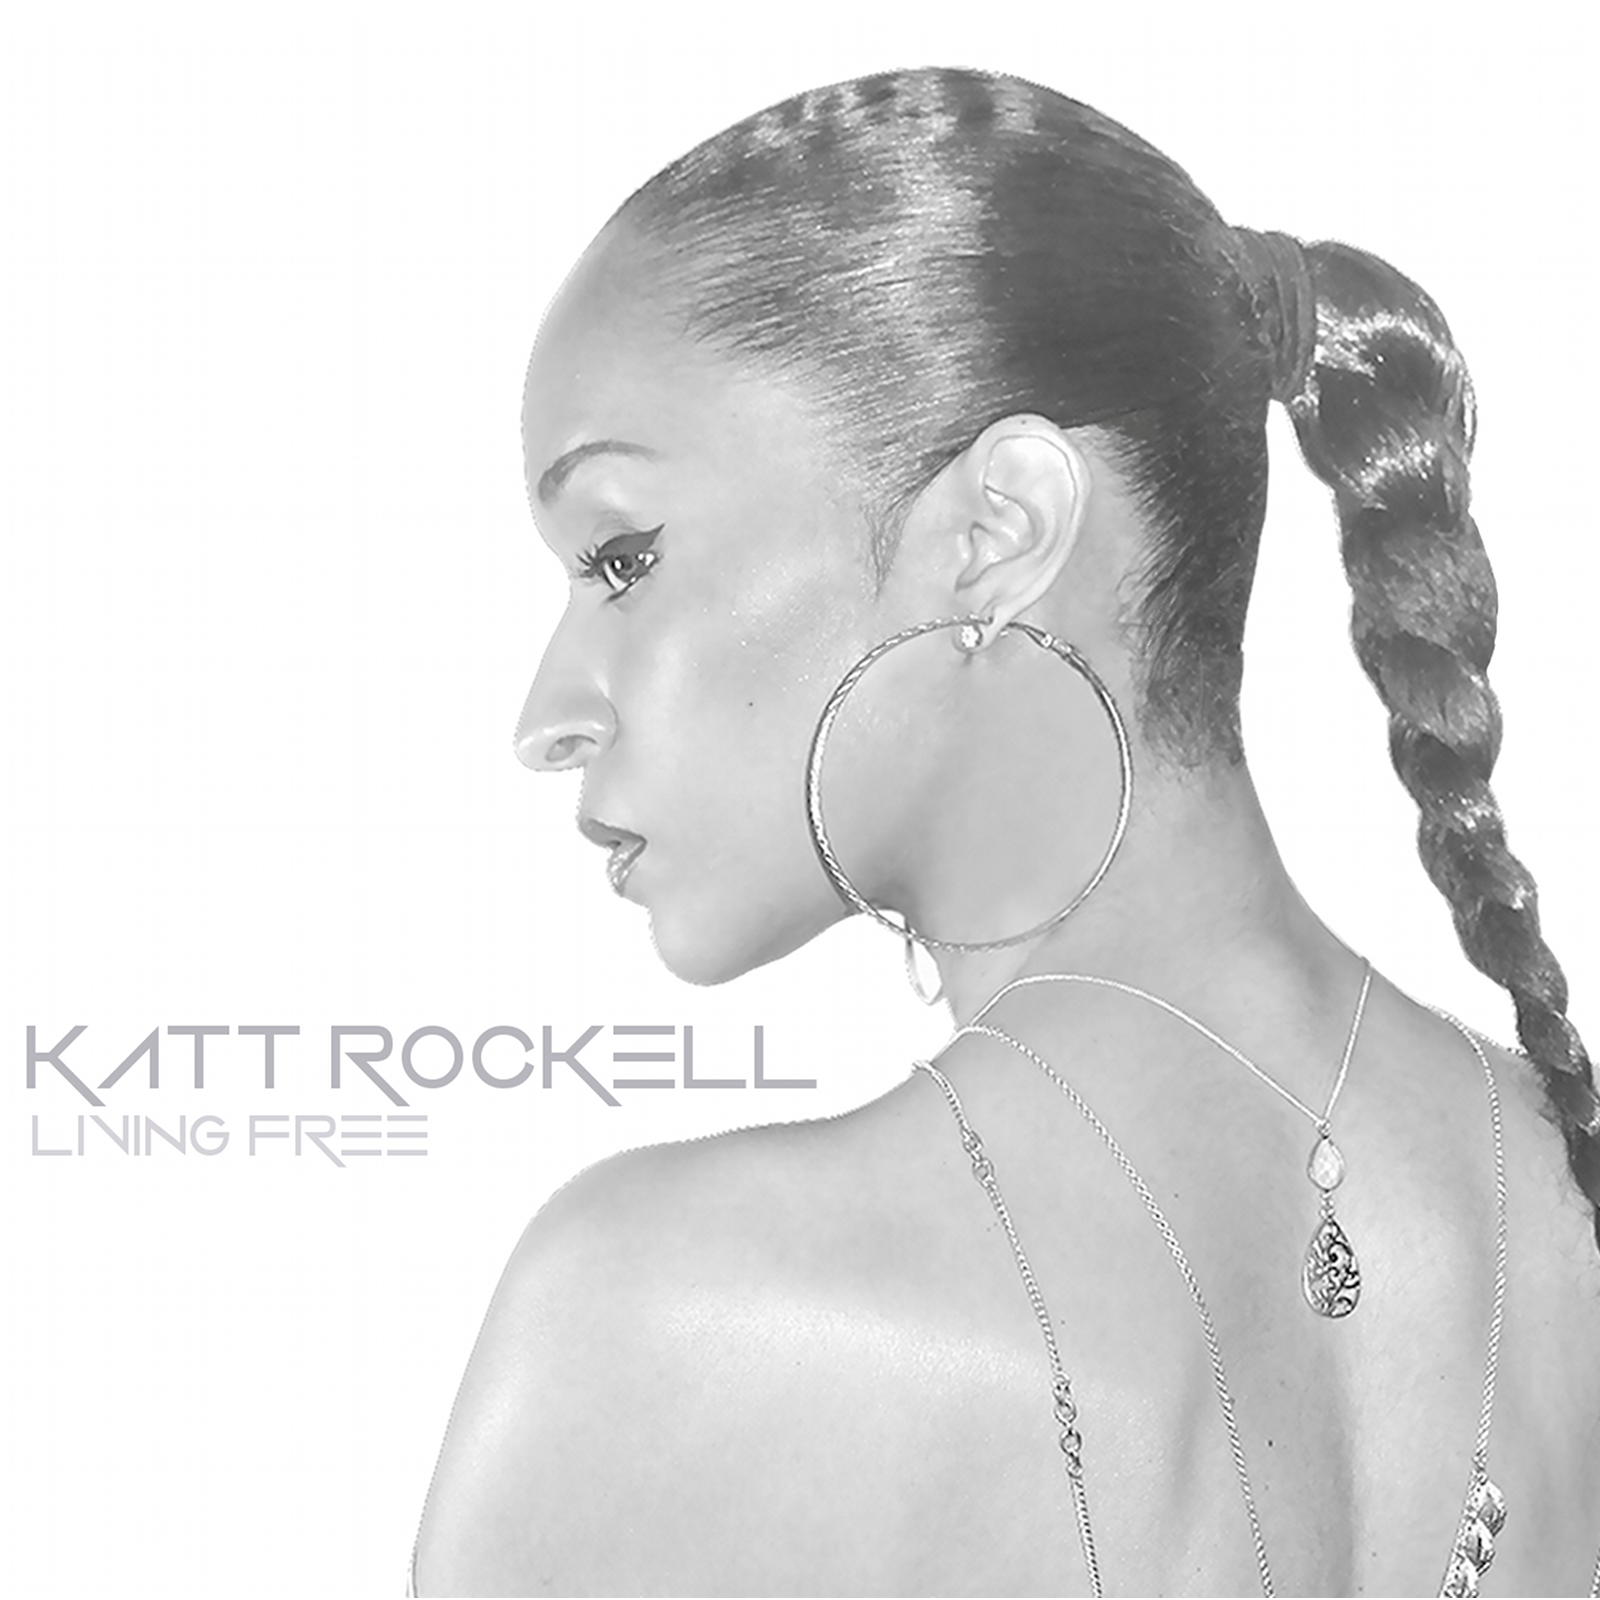 Video: Katt Rockell - Living Free